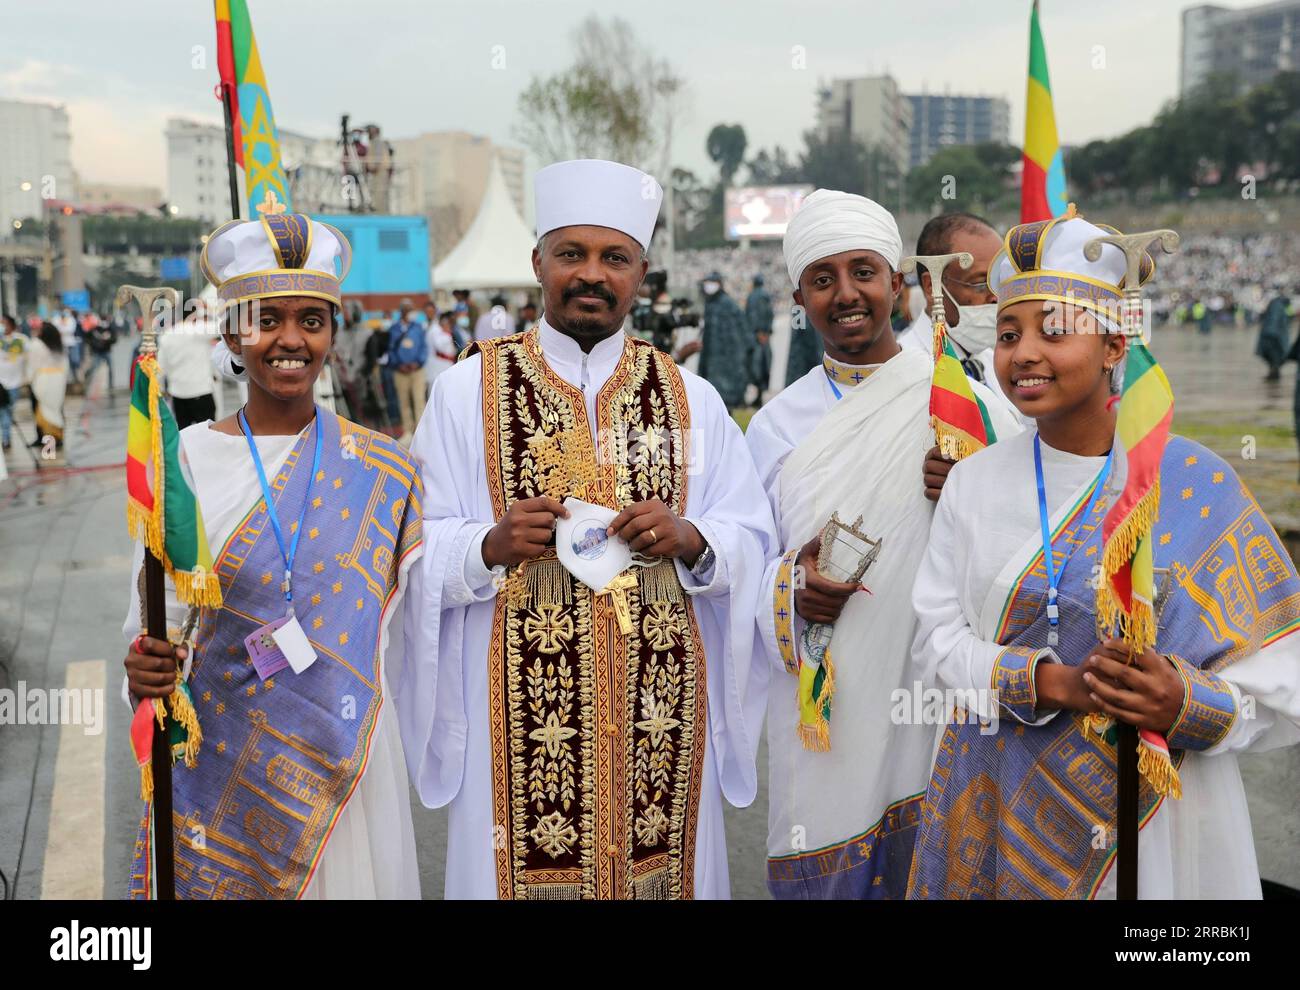 210927 -- ADDIS ABEBA, 27. September 2021 -- Menschen versammeln sich anlässlich des Meskel Festivals in Addis Abeba, Hauptstadt Äthiopiens, 26. September 2021. Äthiopisch-orthodoxe Christen feierten am Sonntag den zweitägigen Meskel, die Entdeckung des Wahren Kreuzes, mit verschiedenen religiösen und kulturellen Aktivitäten. ATHIOPIEN-ADDIS ABEBA-MESKEL FESTIVAL-CELEBRATIONS WANGXPING PUBLICATIONXNOTXINXCHN Stockfoto